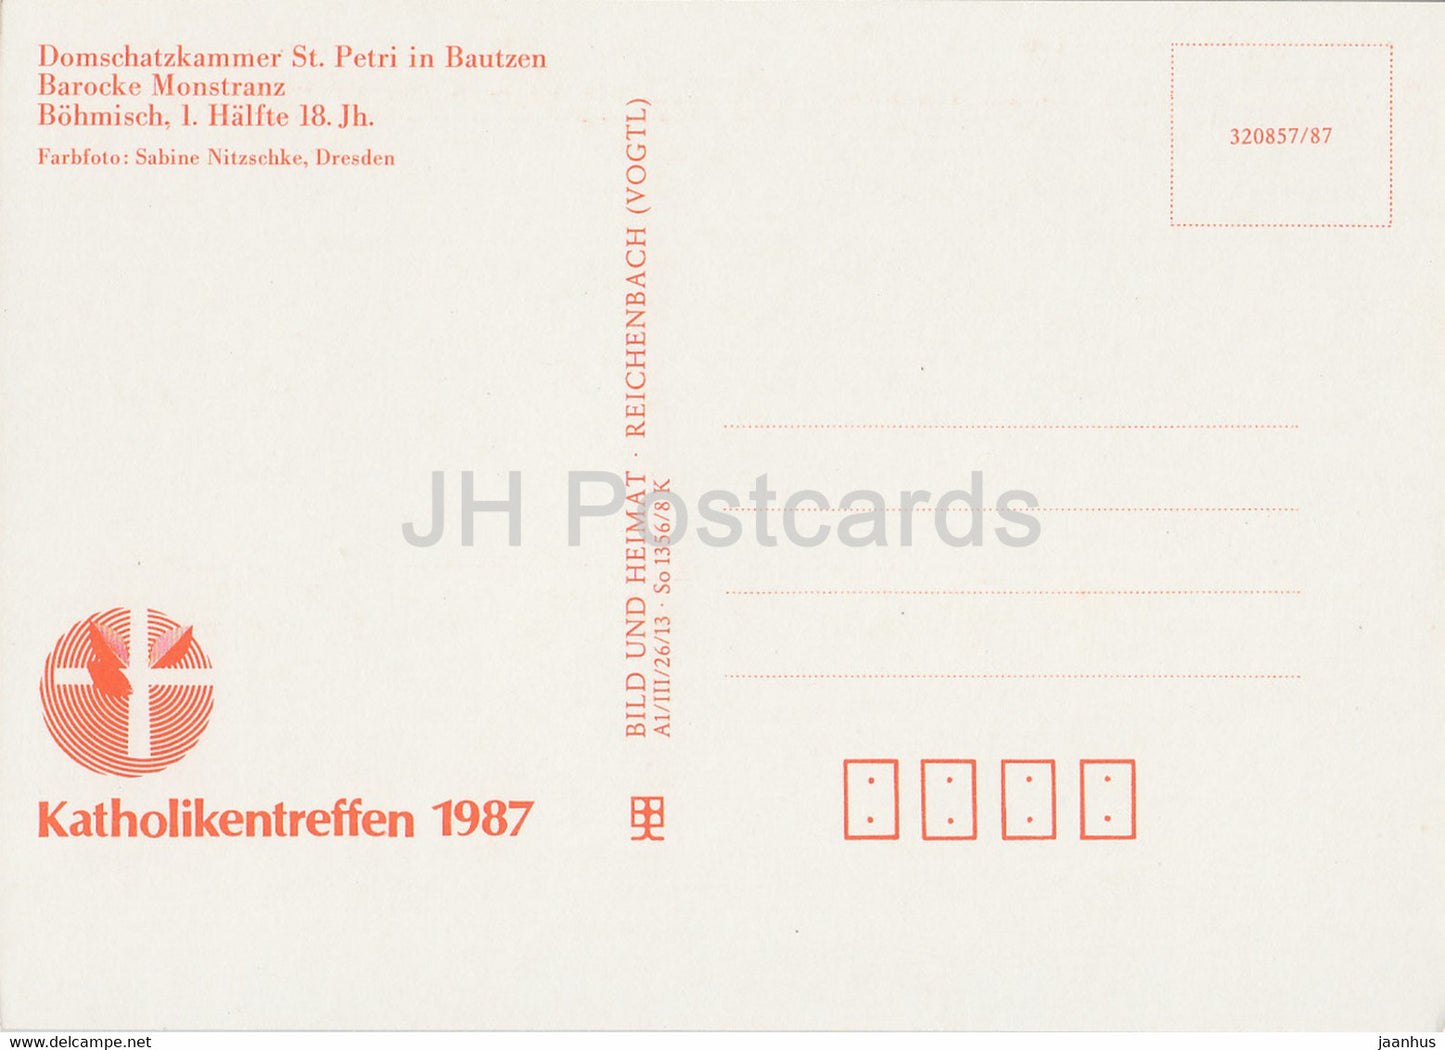 Barocke Monstranz - Domschatzkammer St Petri à Bautzen - 1987 - DDR Allemagne - inutilisé